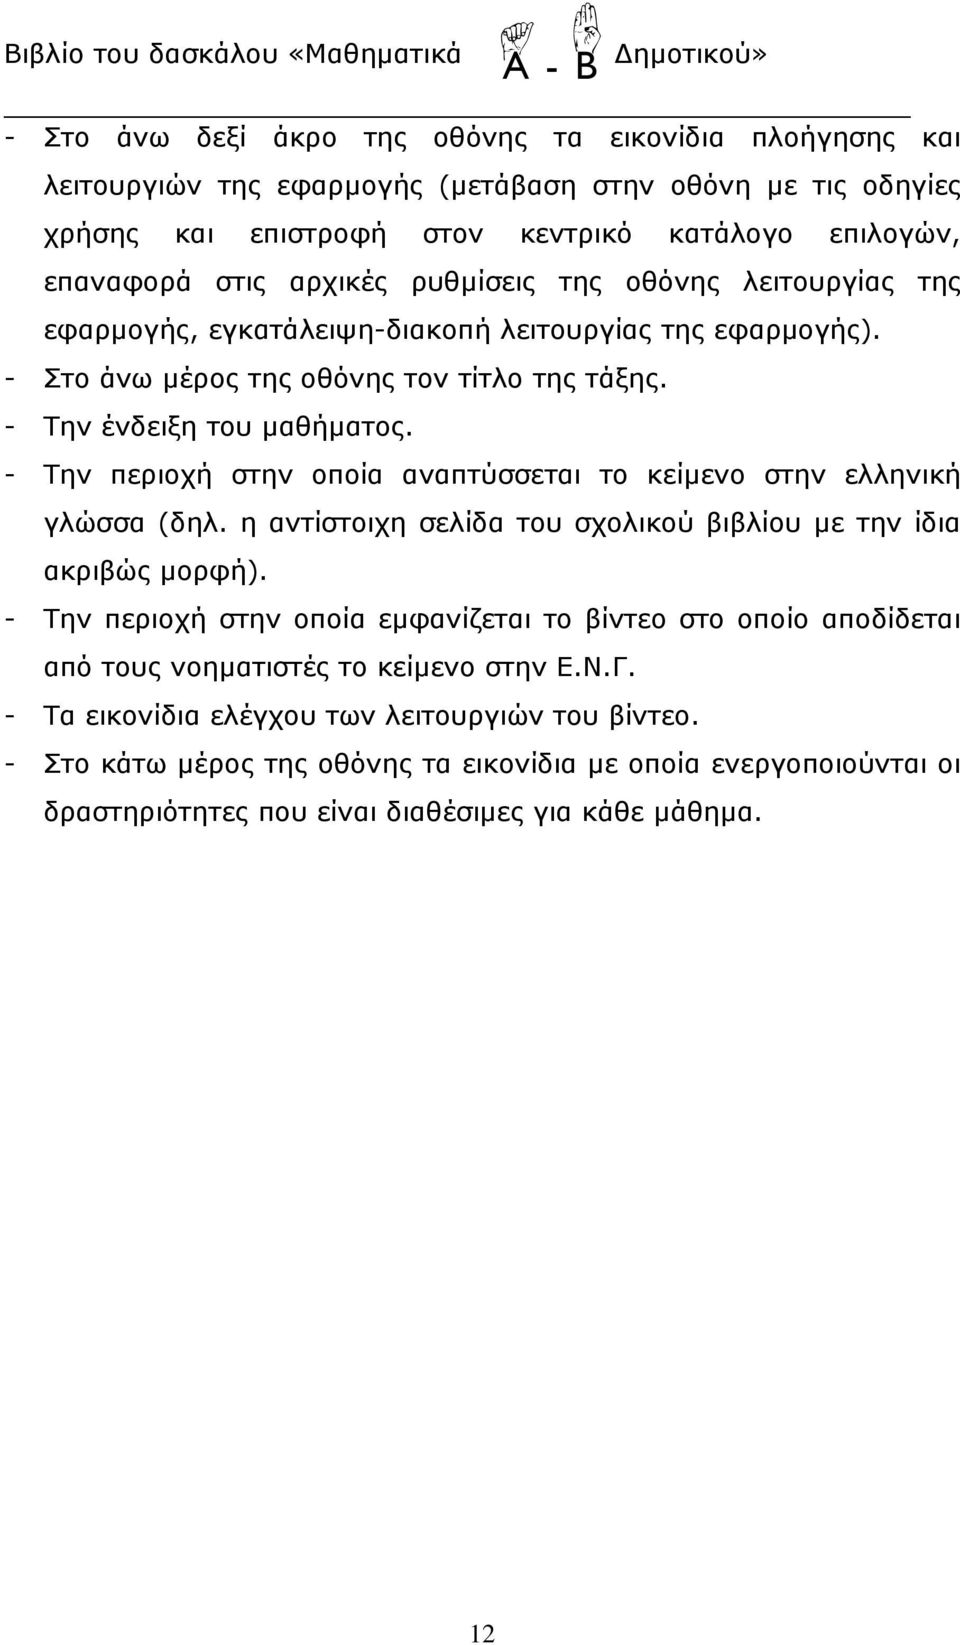 - Την περιοχή στην οποία αναπτύσσεται το κείμενο στην ελληνική γλώσσα (δηλ. η αντίστοιχη σελίδα του σχολικού βιβλίου με την ίδια ακριβώς μορφή).